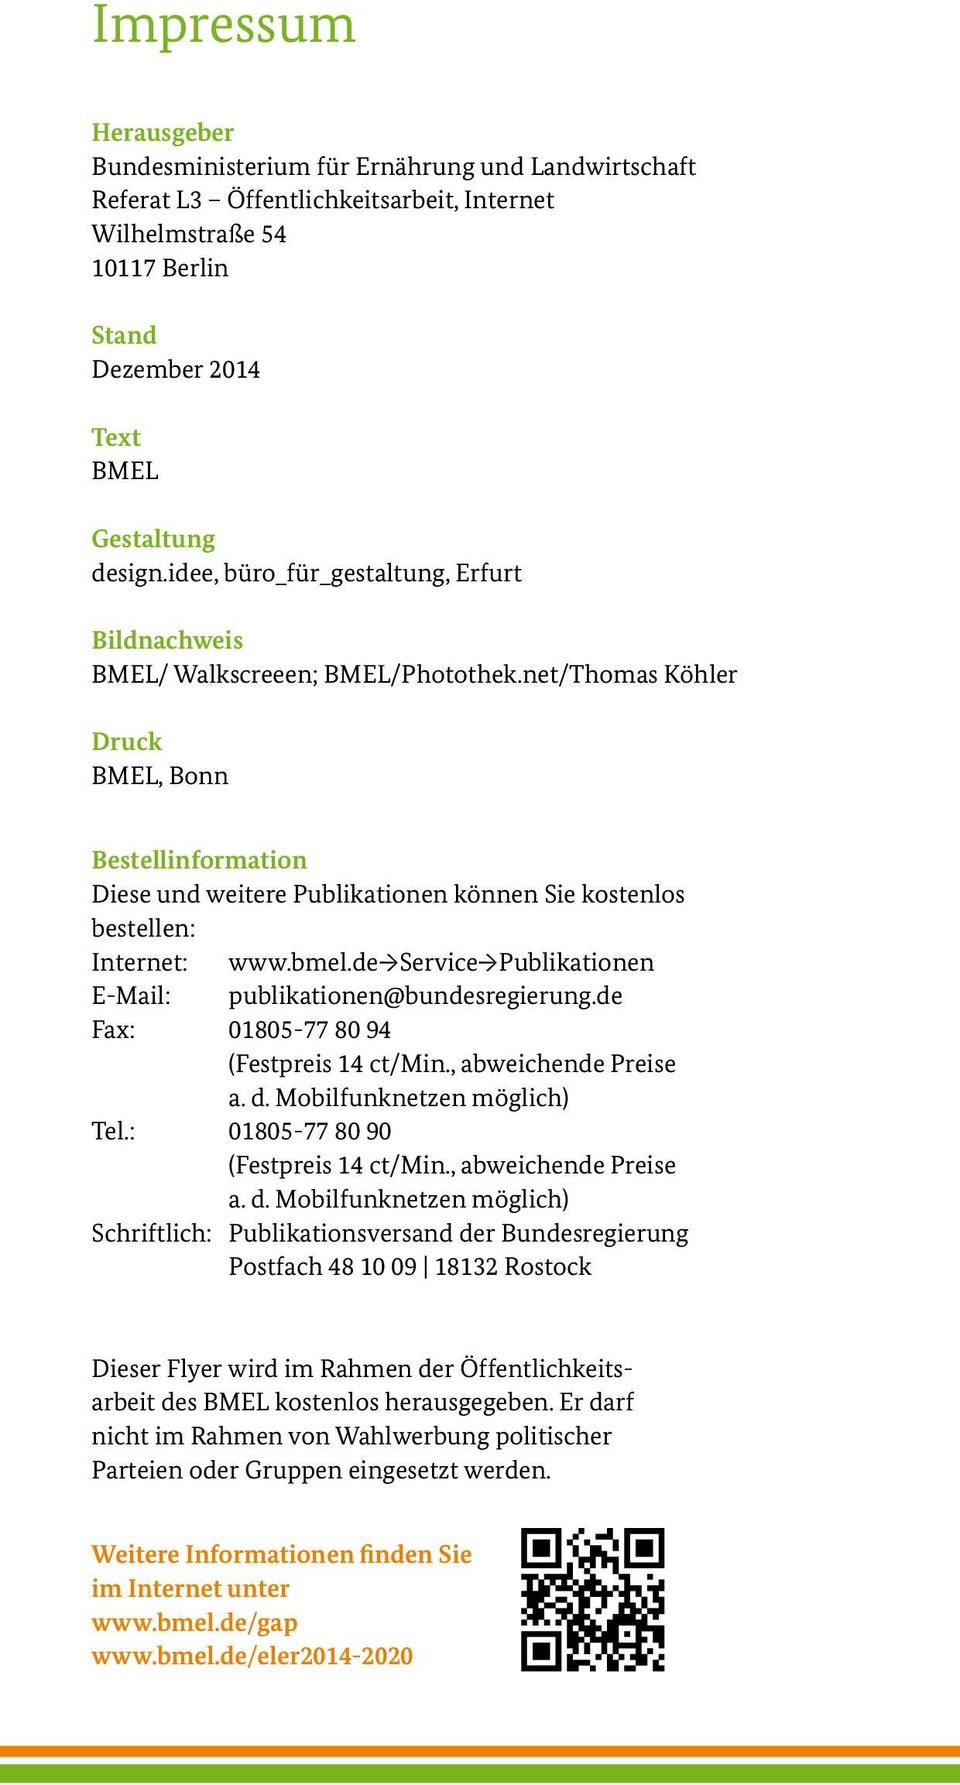 net/Thomas Köhler Druck BMEL, Bonn Bestellinformation Diese und weitere Publikationen können Sie kostenlos bestellen: Internet: www.bmel.de Service Publikationen E-Mail: publikationen@bundesregierung.